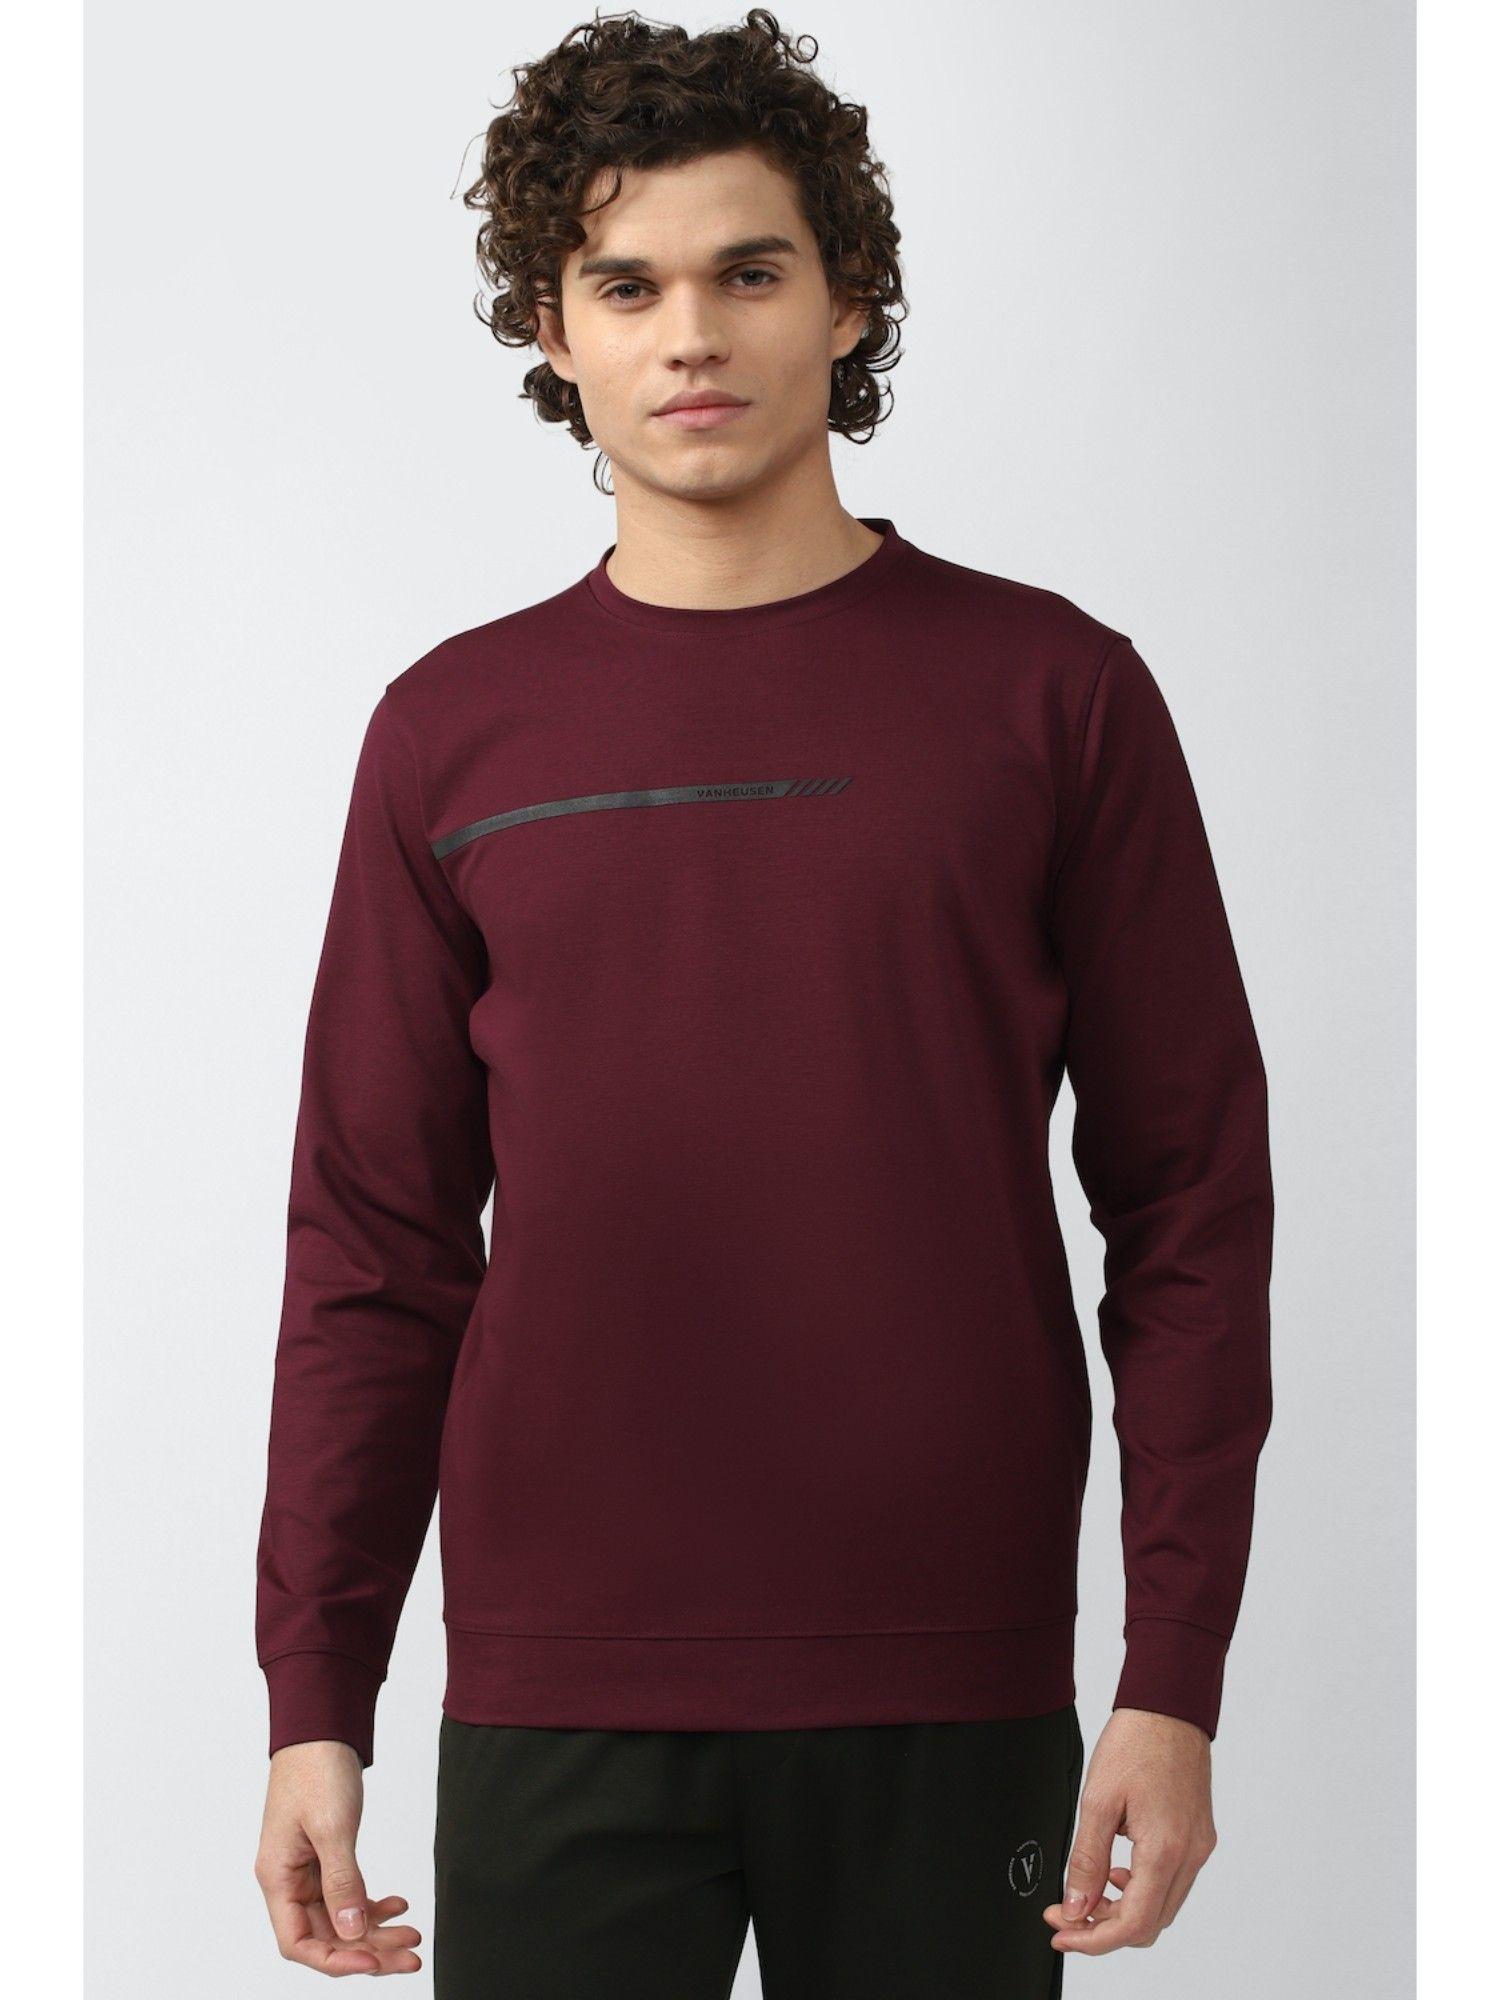 maroon-solid-sweatshirt